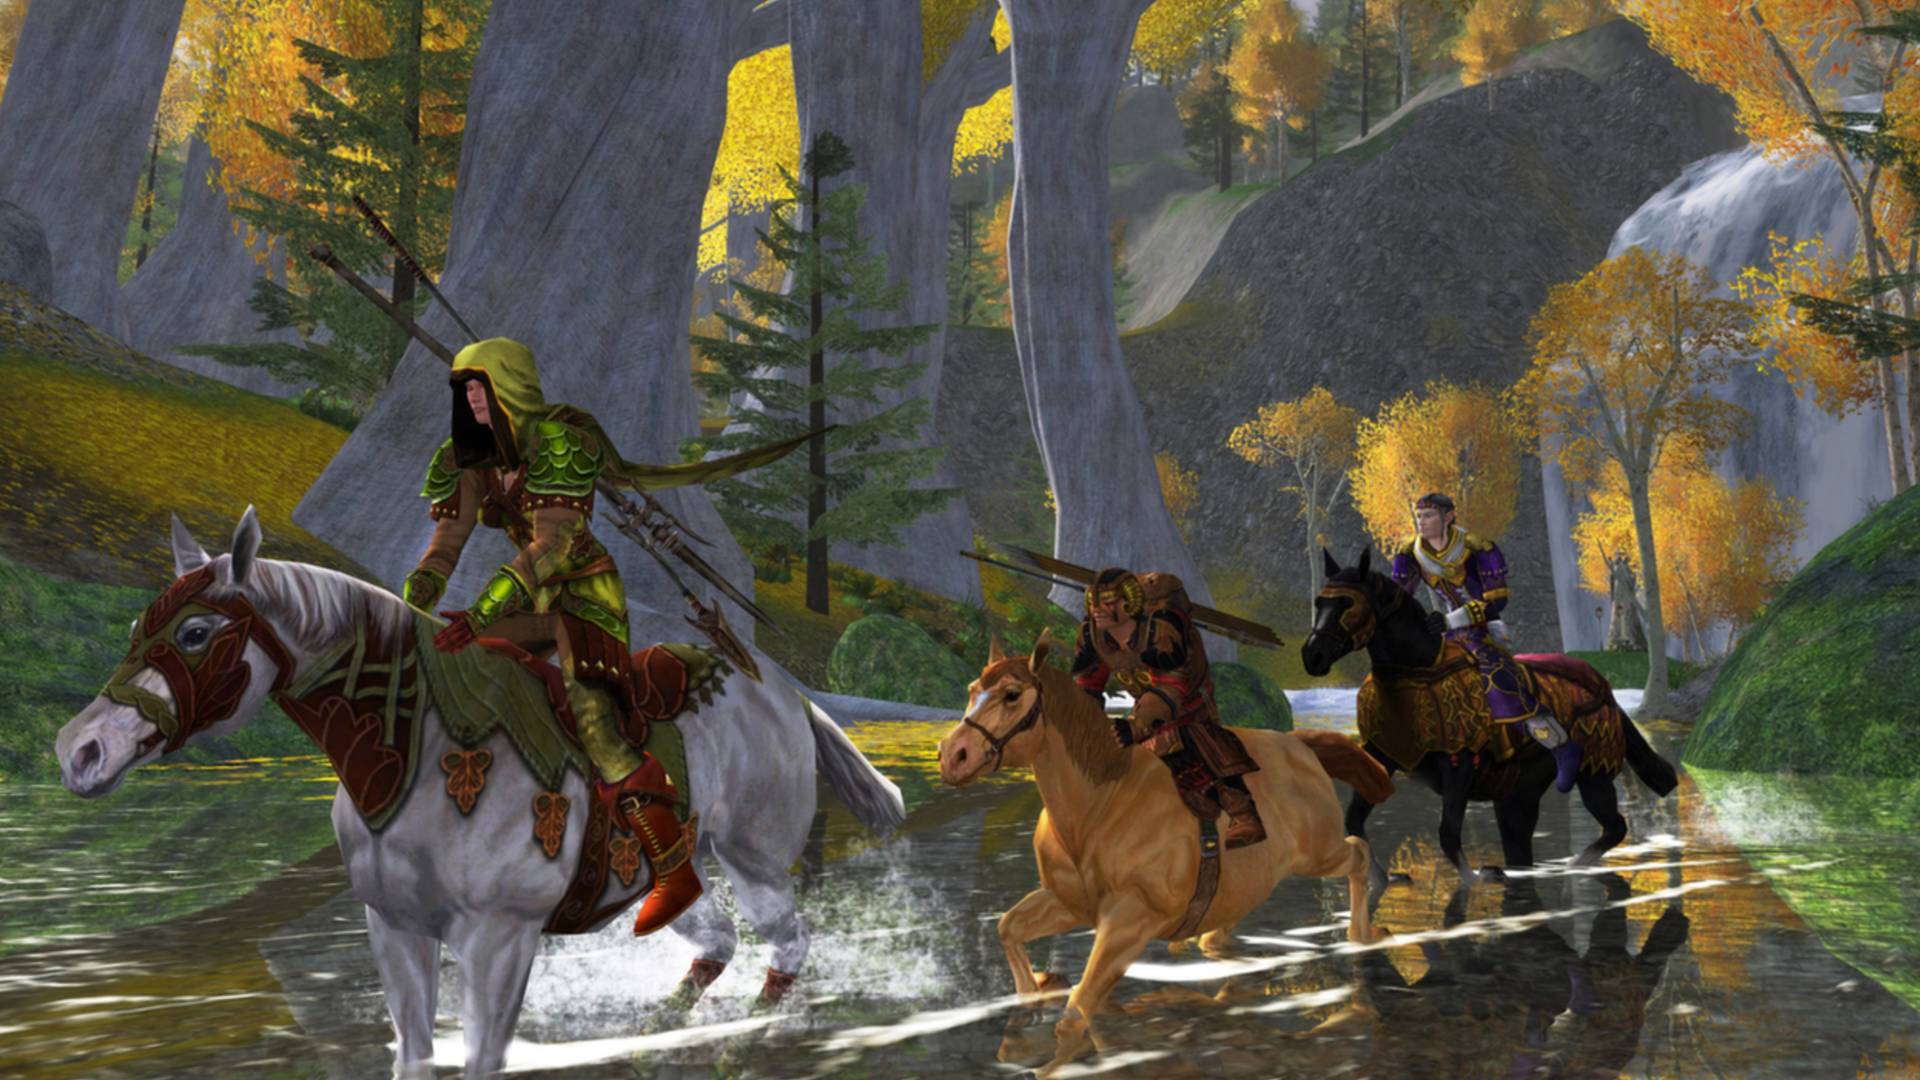 MMO Gratis Terbaik: Lord of the Rings Online. Gambar menunjukkan prosesi orang -orang yang berkuda menunggang sungai